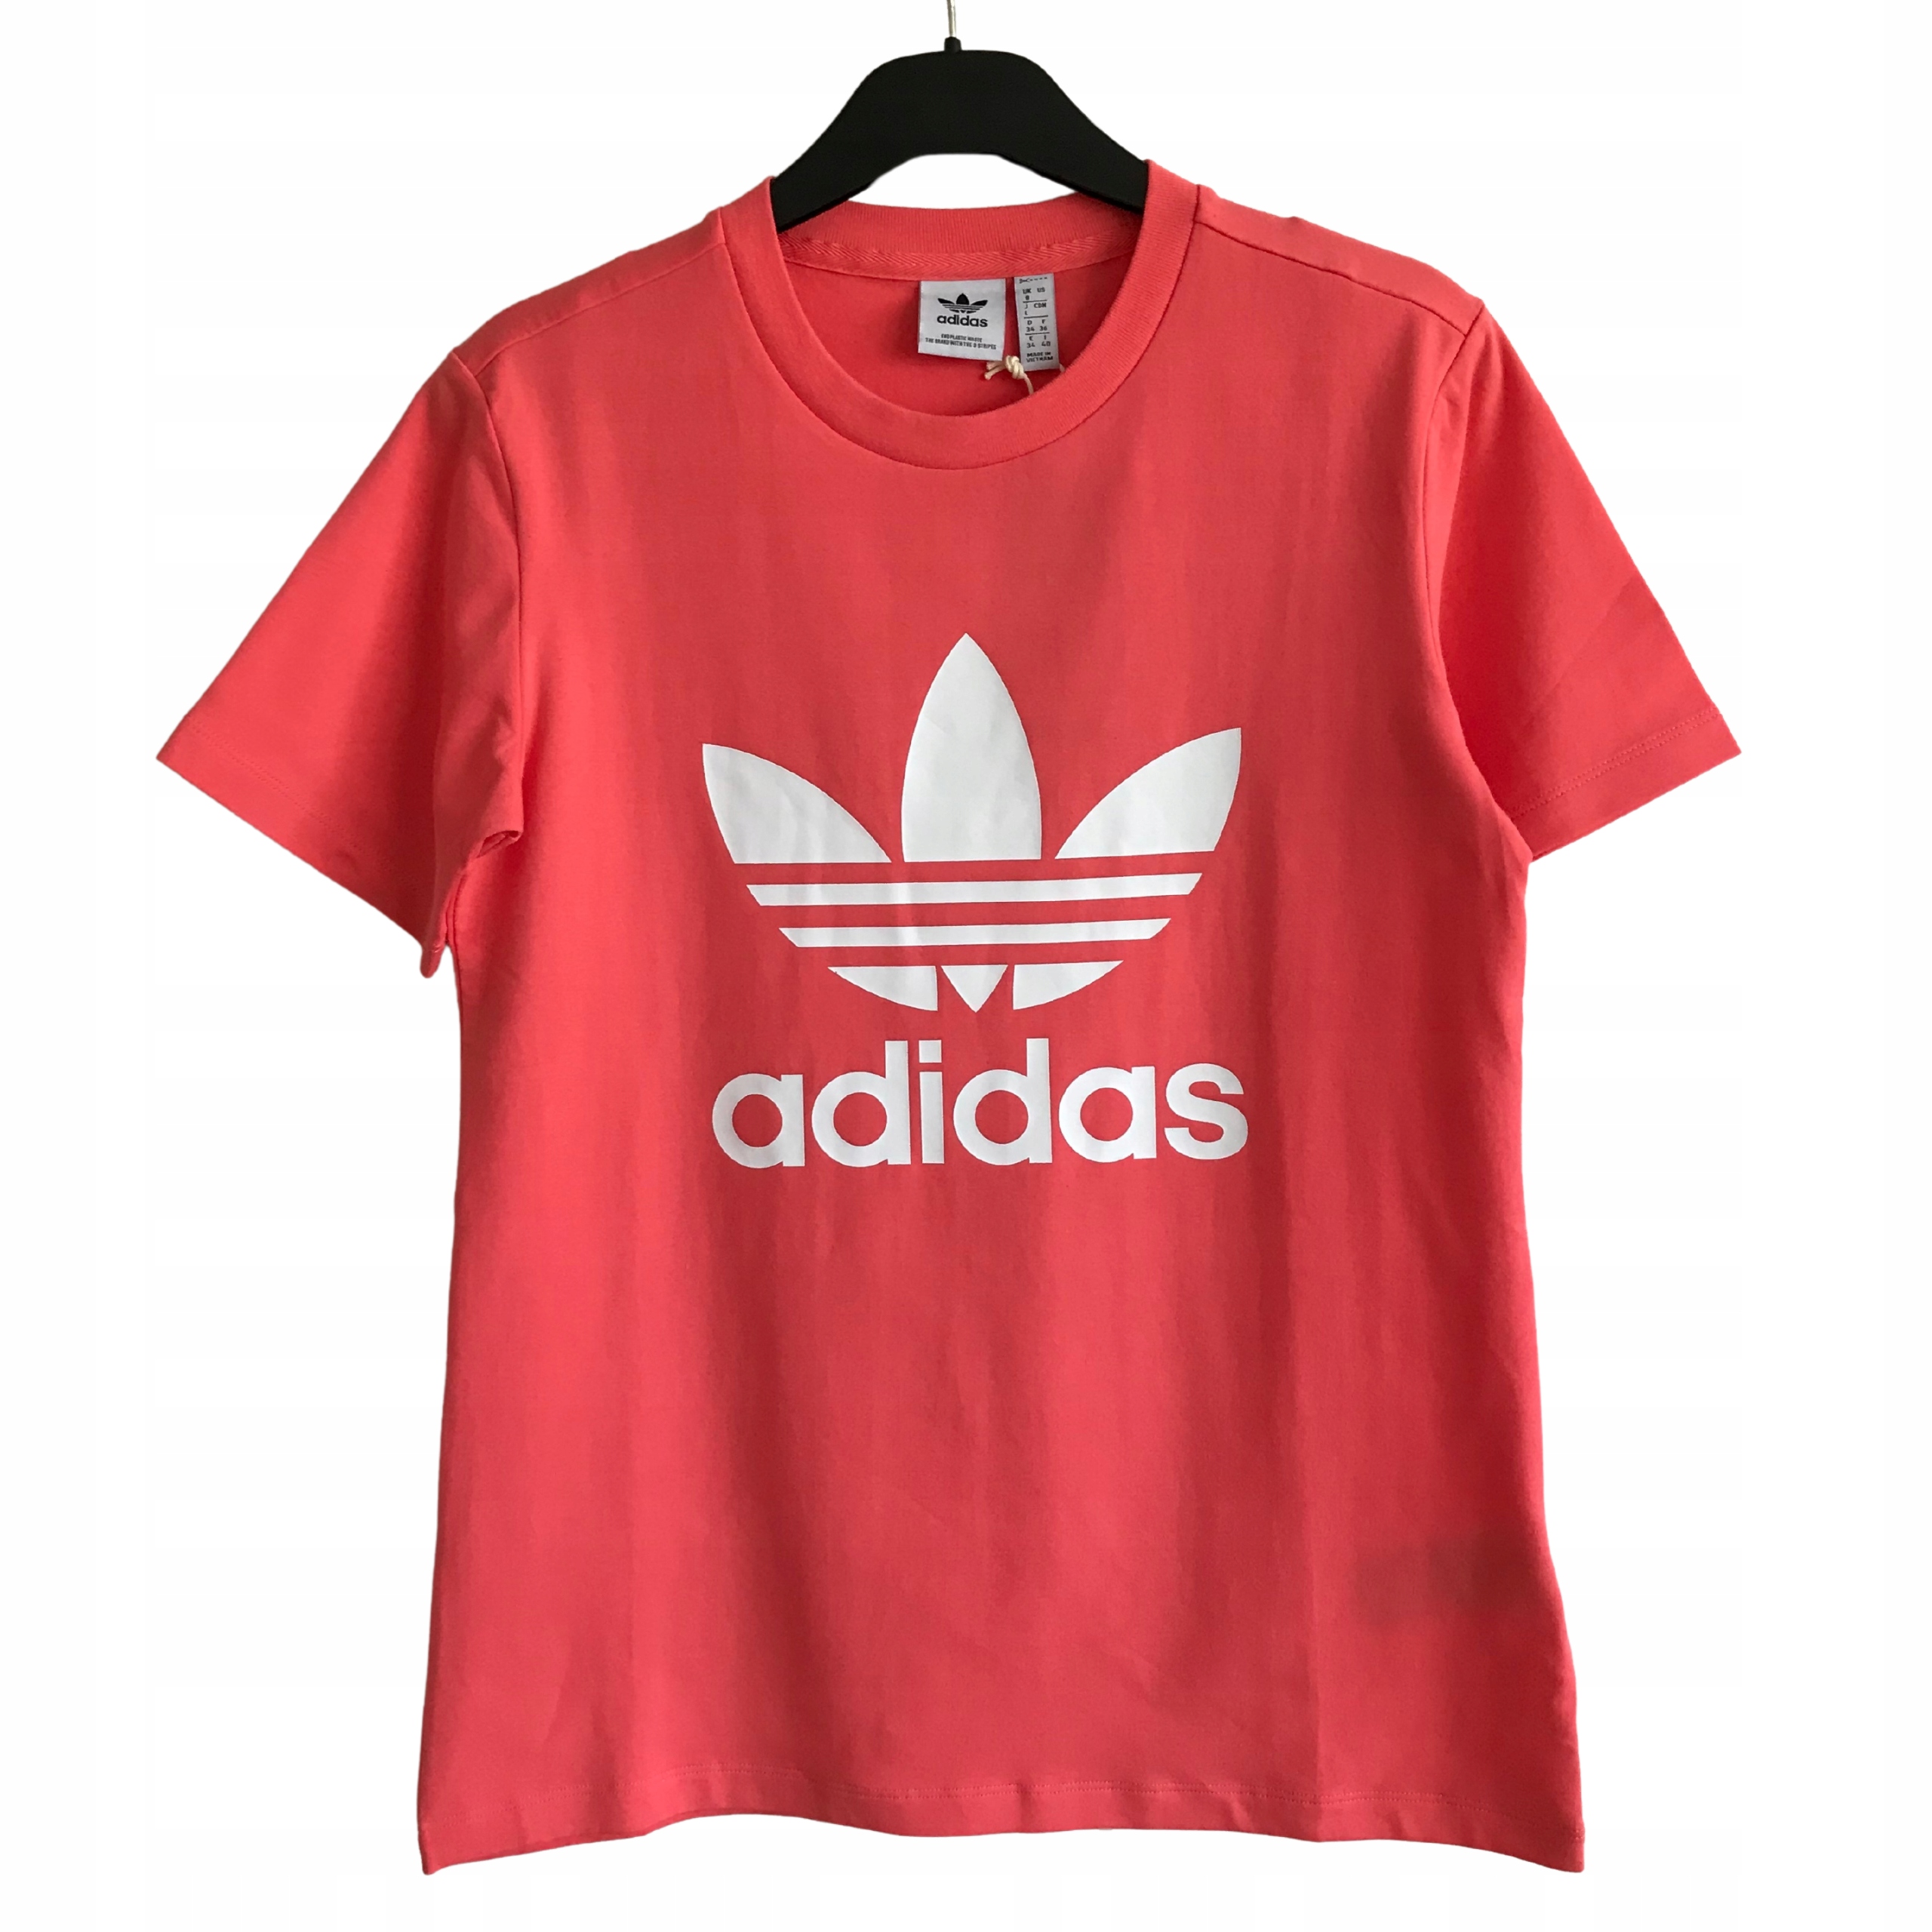 ADIDAS nowy koralowy T-shirt damski z logo 34 XS 12732415420 - Allegro.pl